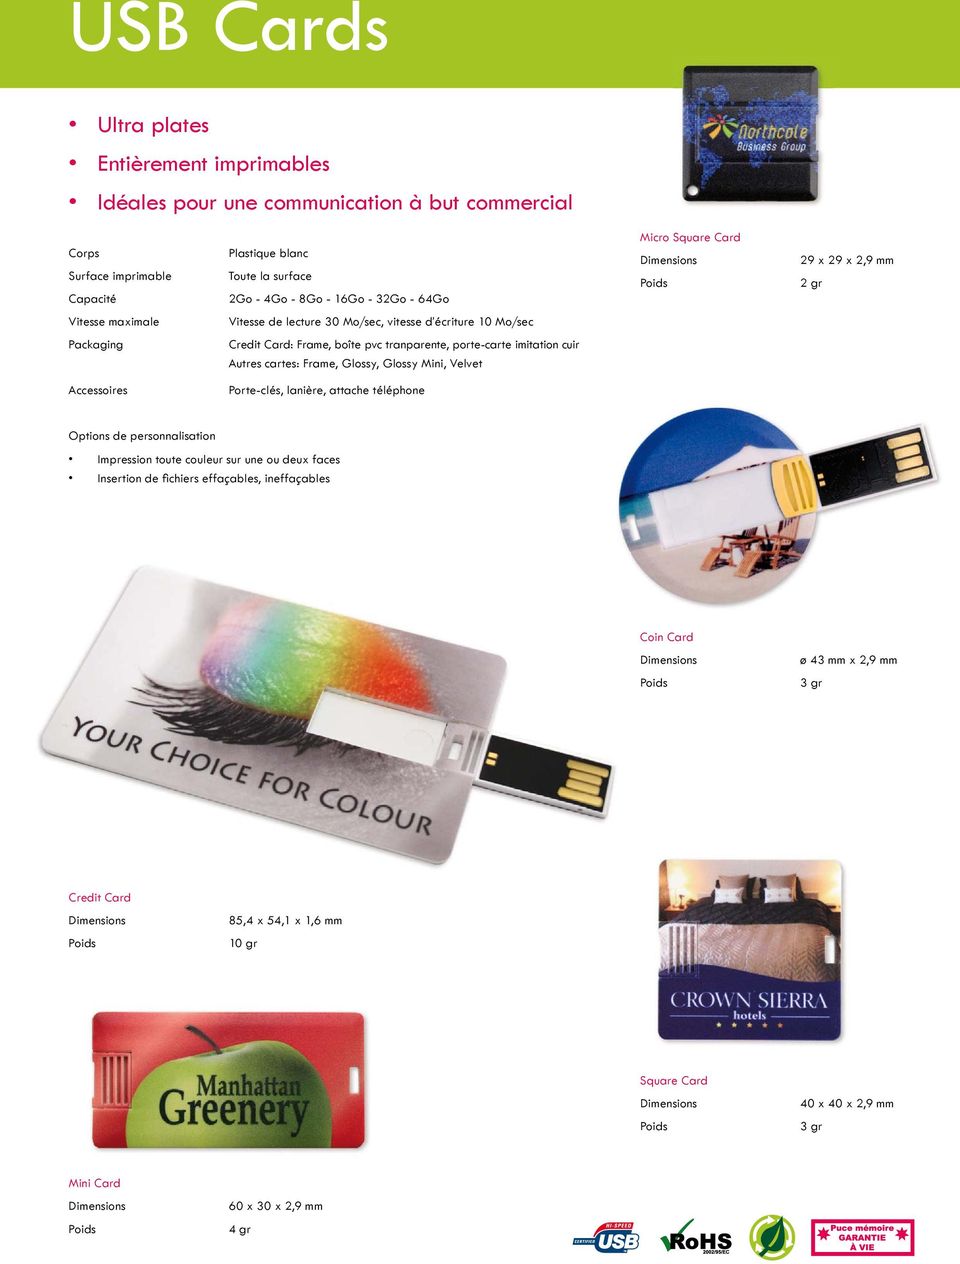 porte-carte imitation cuir Autres cartes: Frame, Glossy, Glossy Mini, Velvet Impression toute couleur sur une ou deux